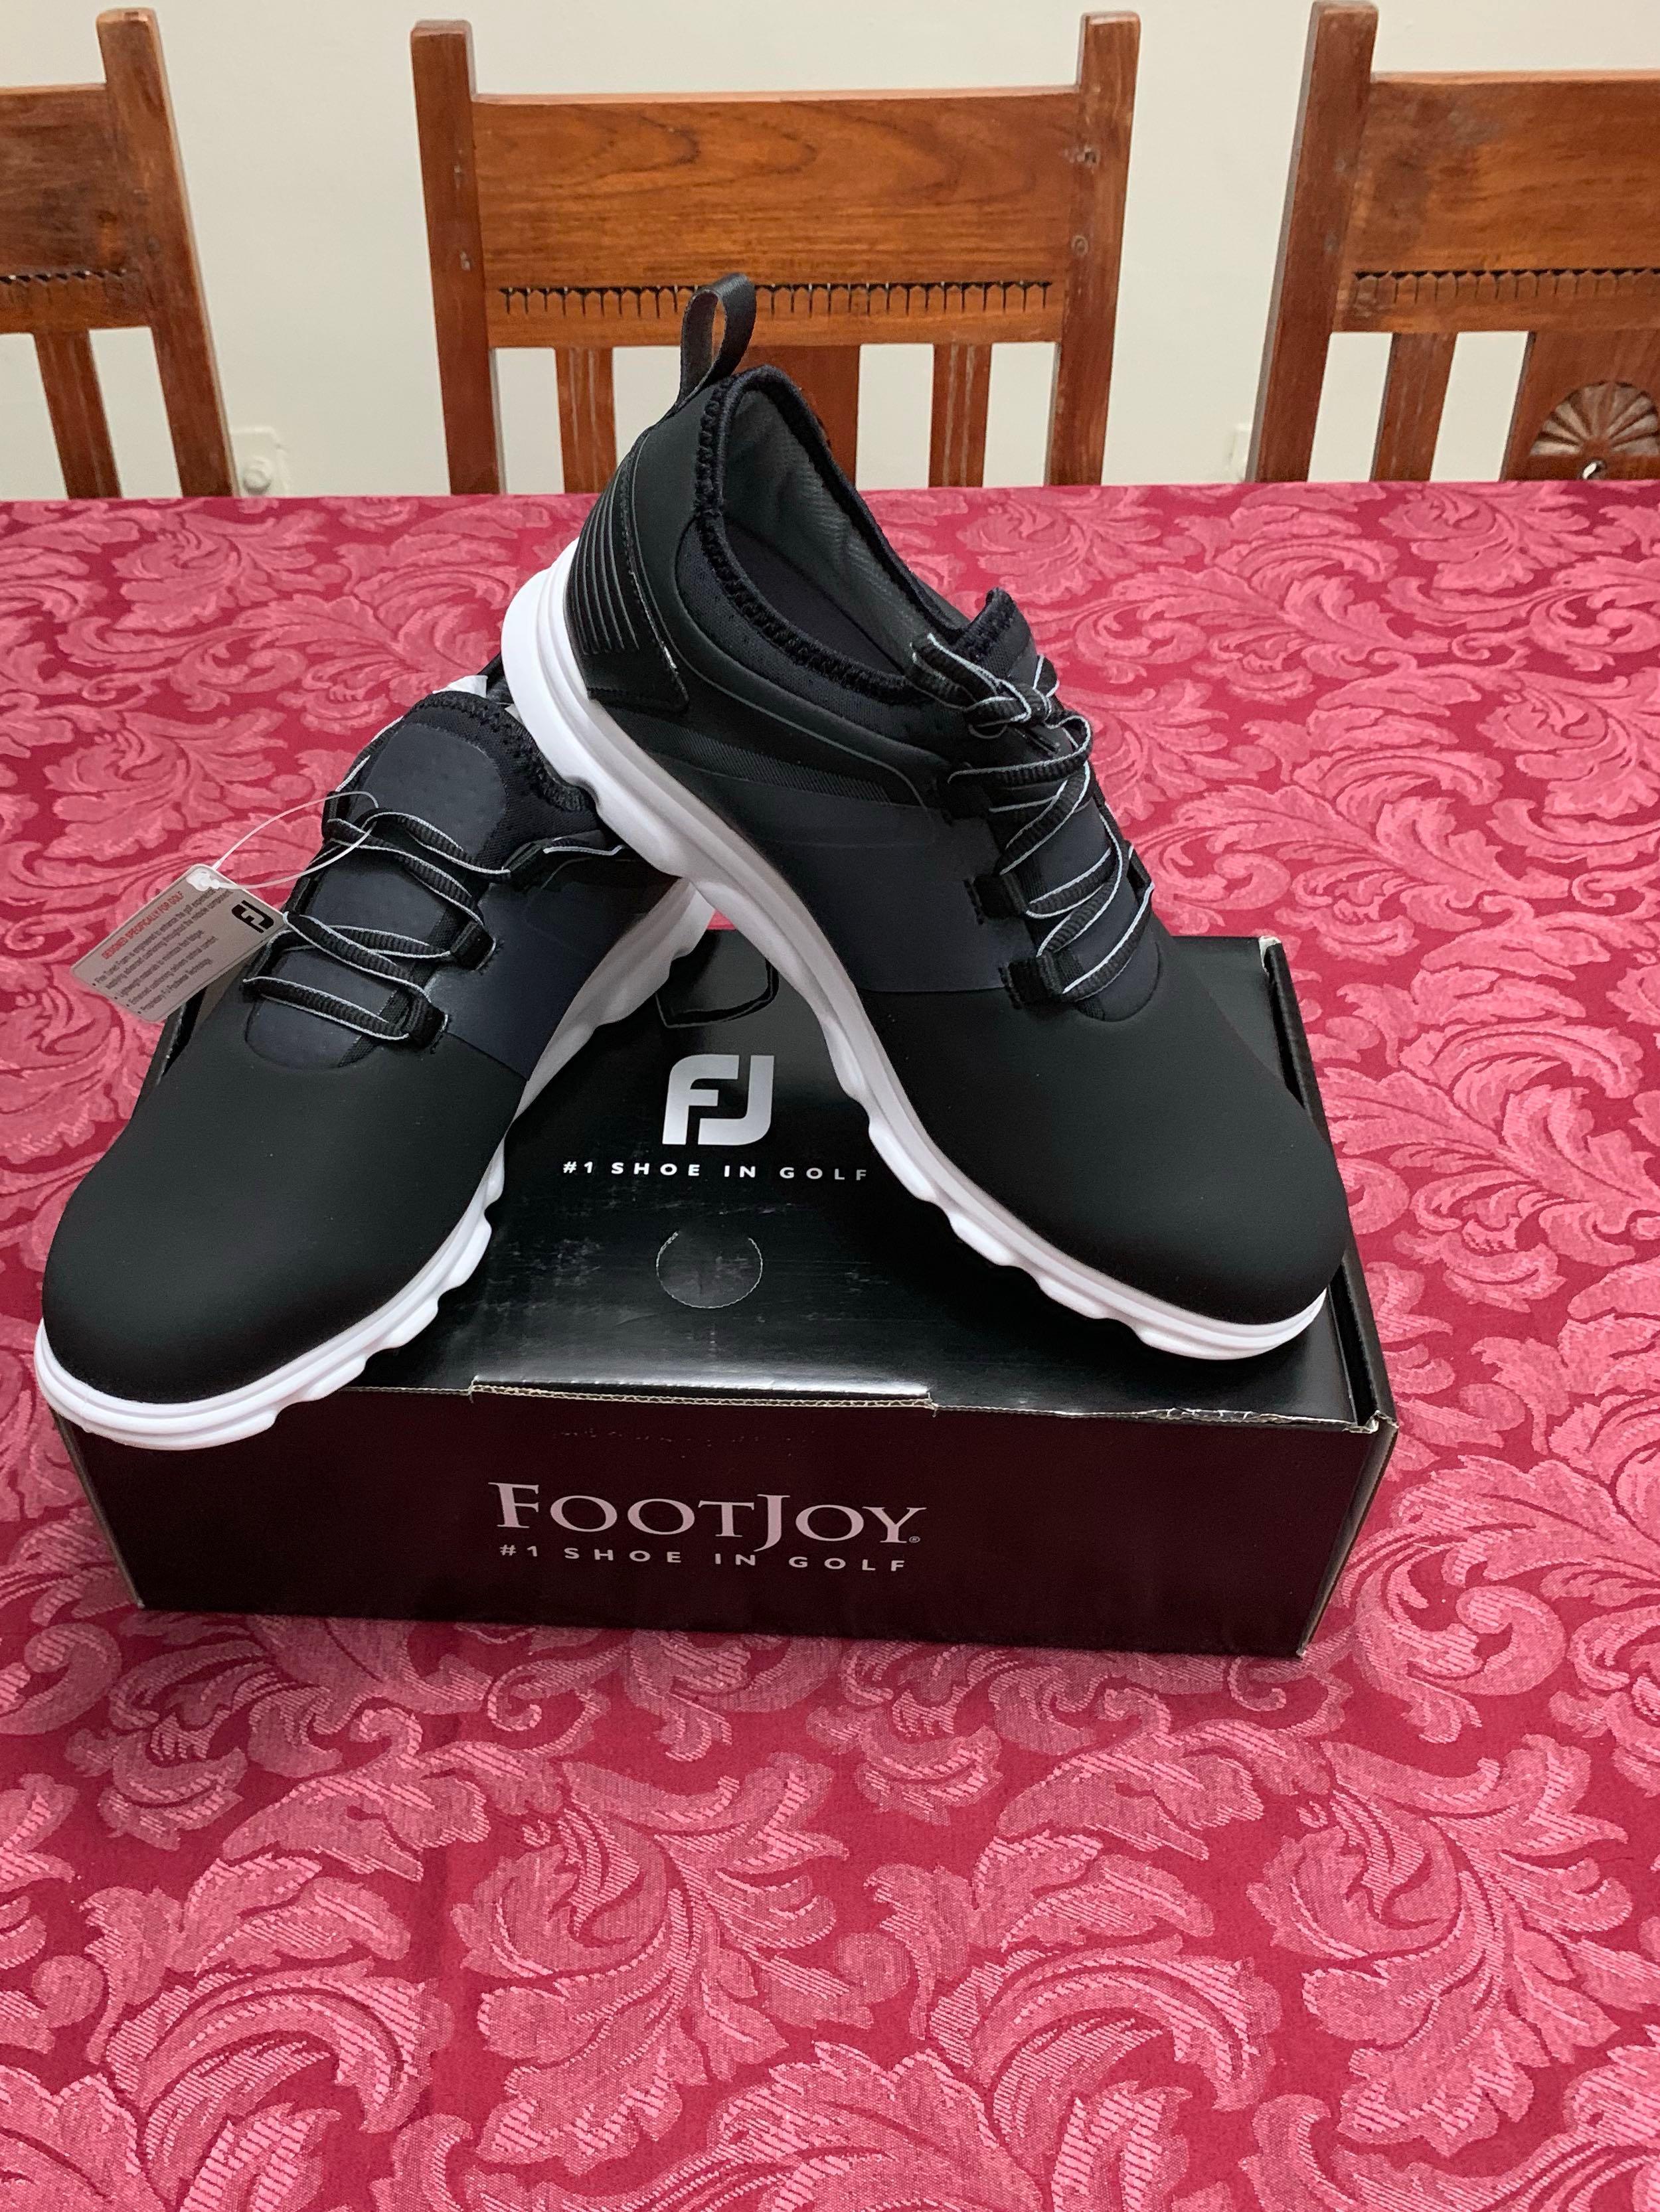 footjoy superlite xp golf shoes